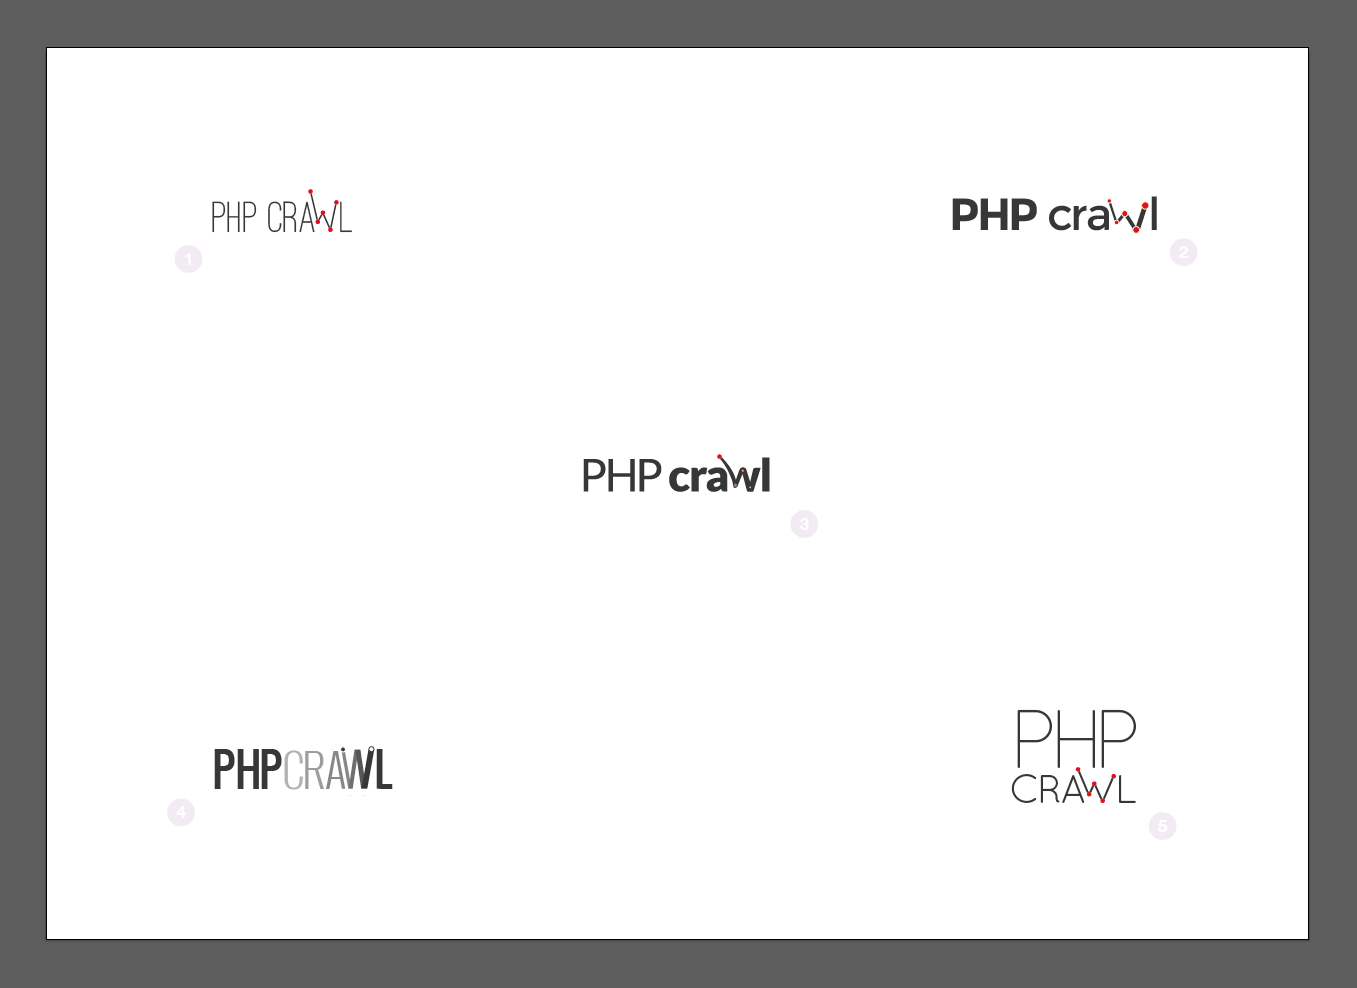 PHPcrawl logo proposals in vector